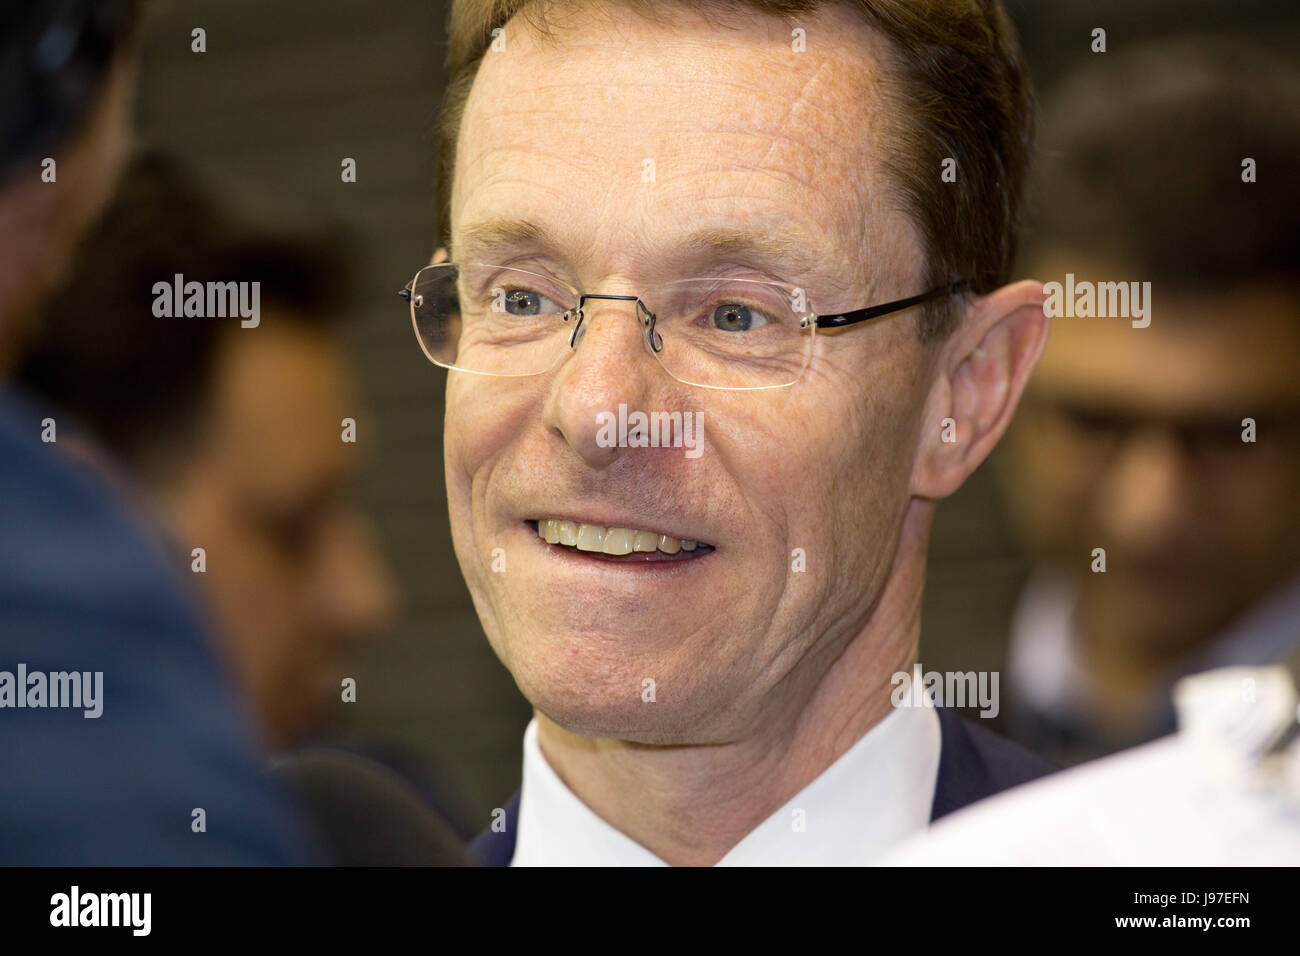 Konservativen Kandidaten Andy Straße nach seiner Wahl zum ersten Bürgermeister für die West Midlands kombinierten Berechtigung Stockfoto